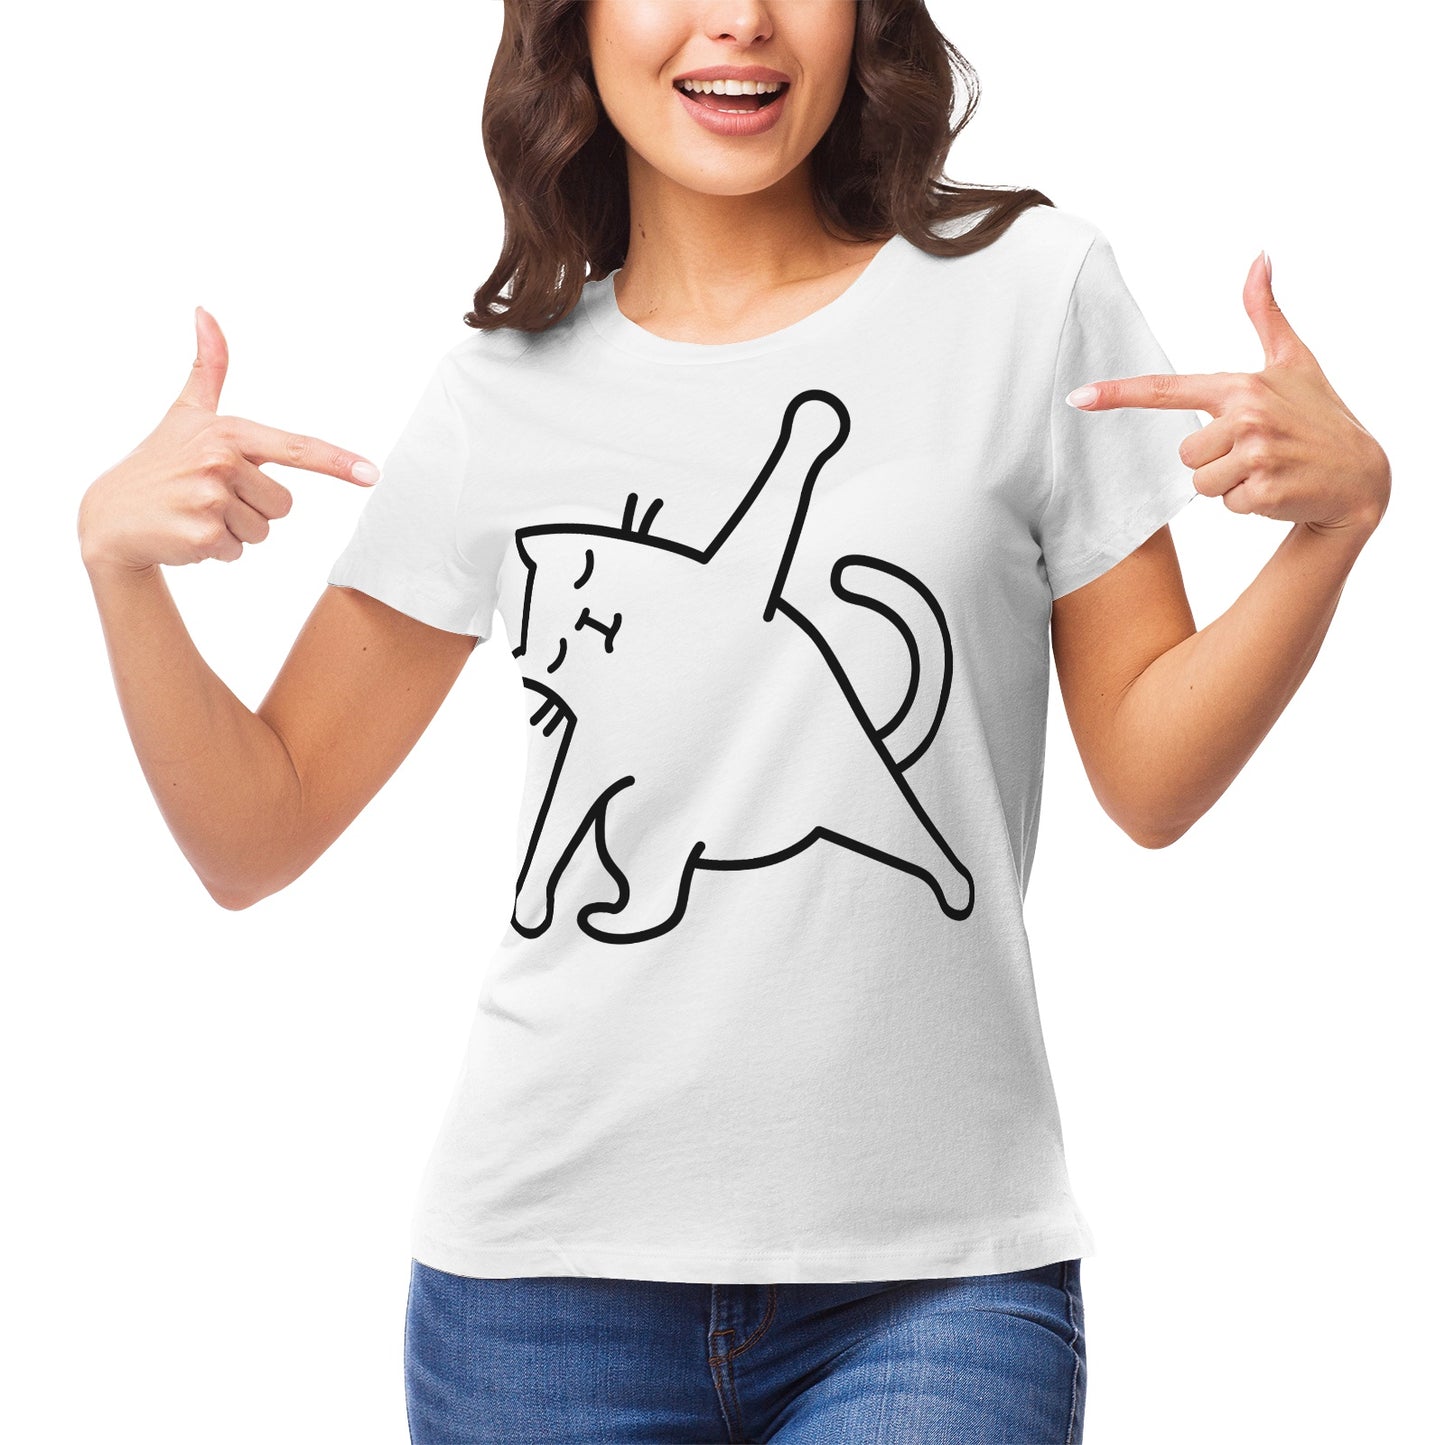 Yoga Cat 9 Women's Ultrasoft Pima Cotton T‑shirt - DromedarShop.com Online Boutique